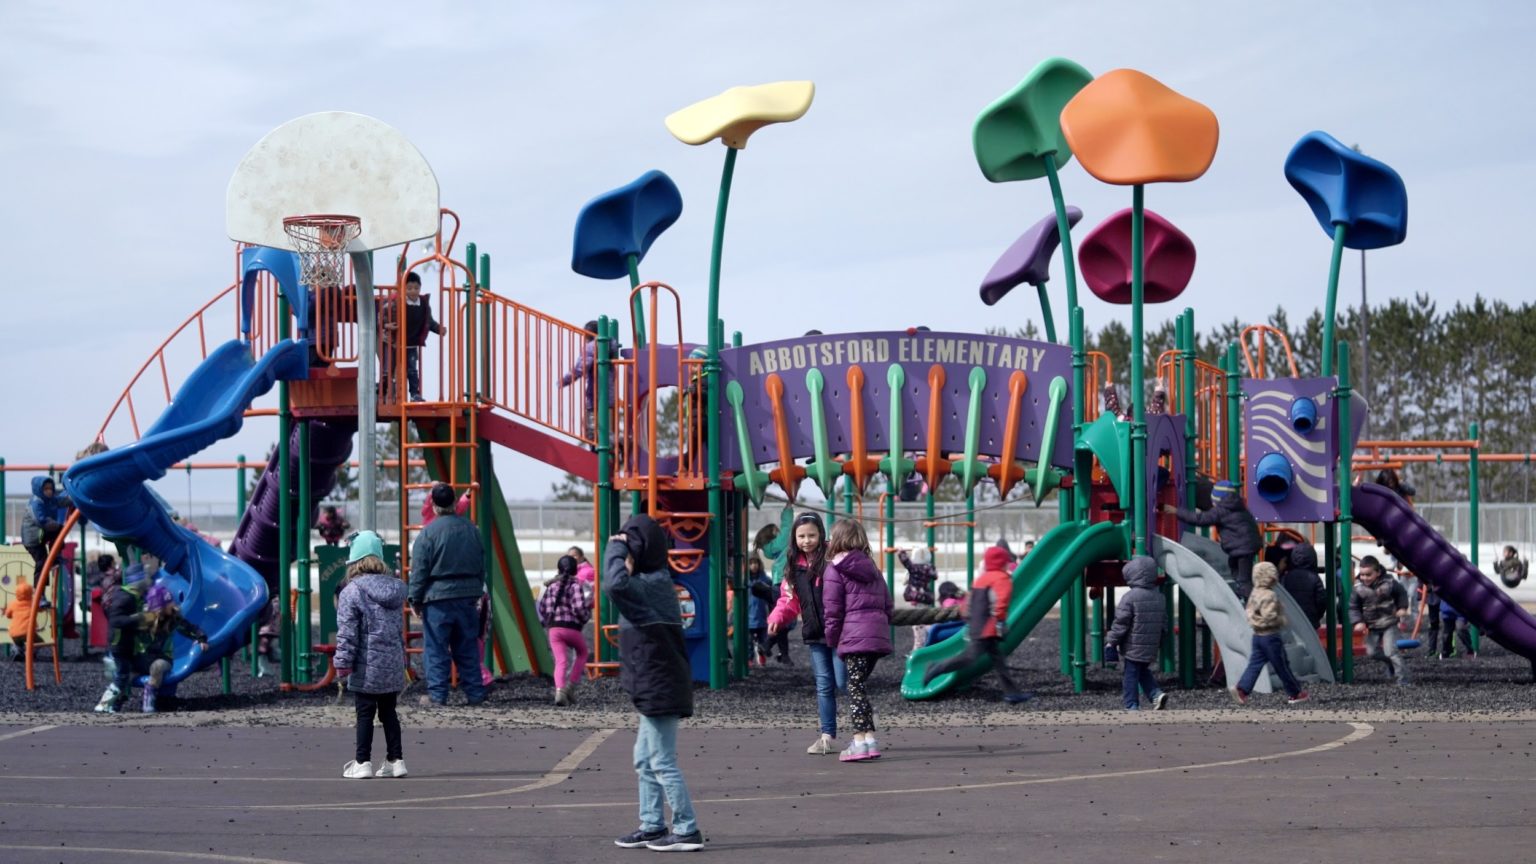 Children play on school playground